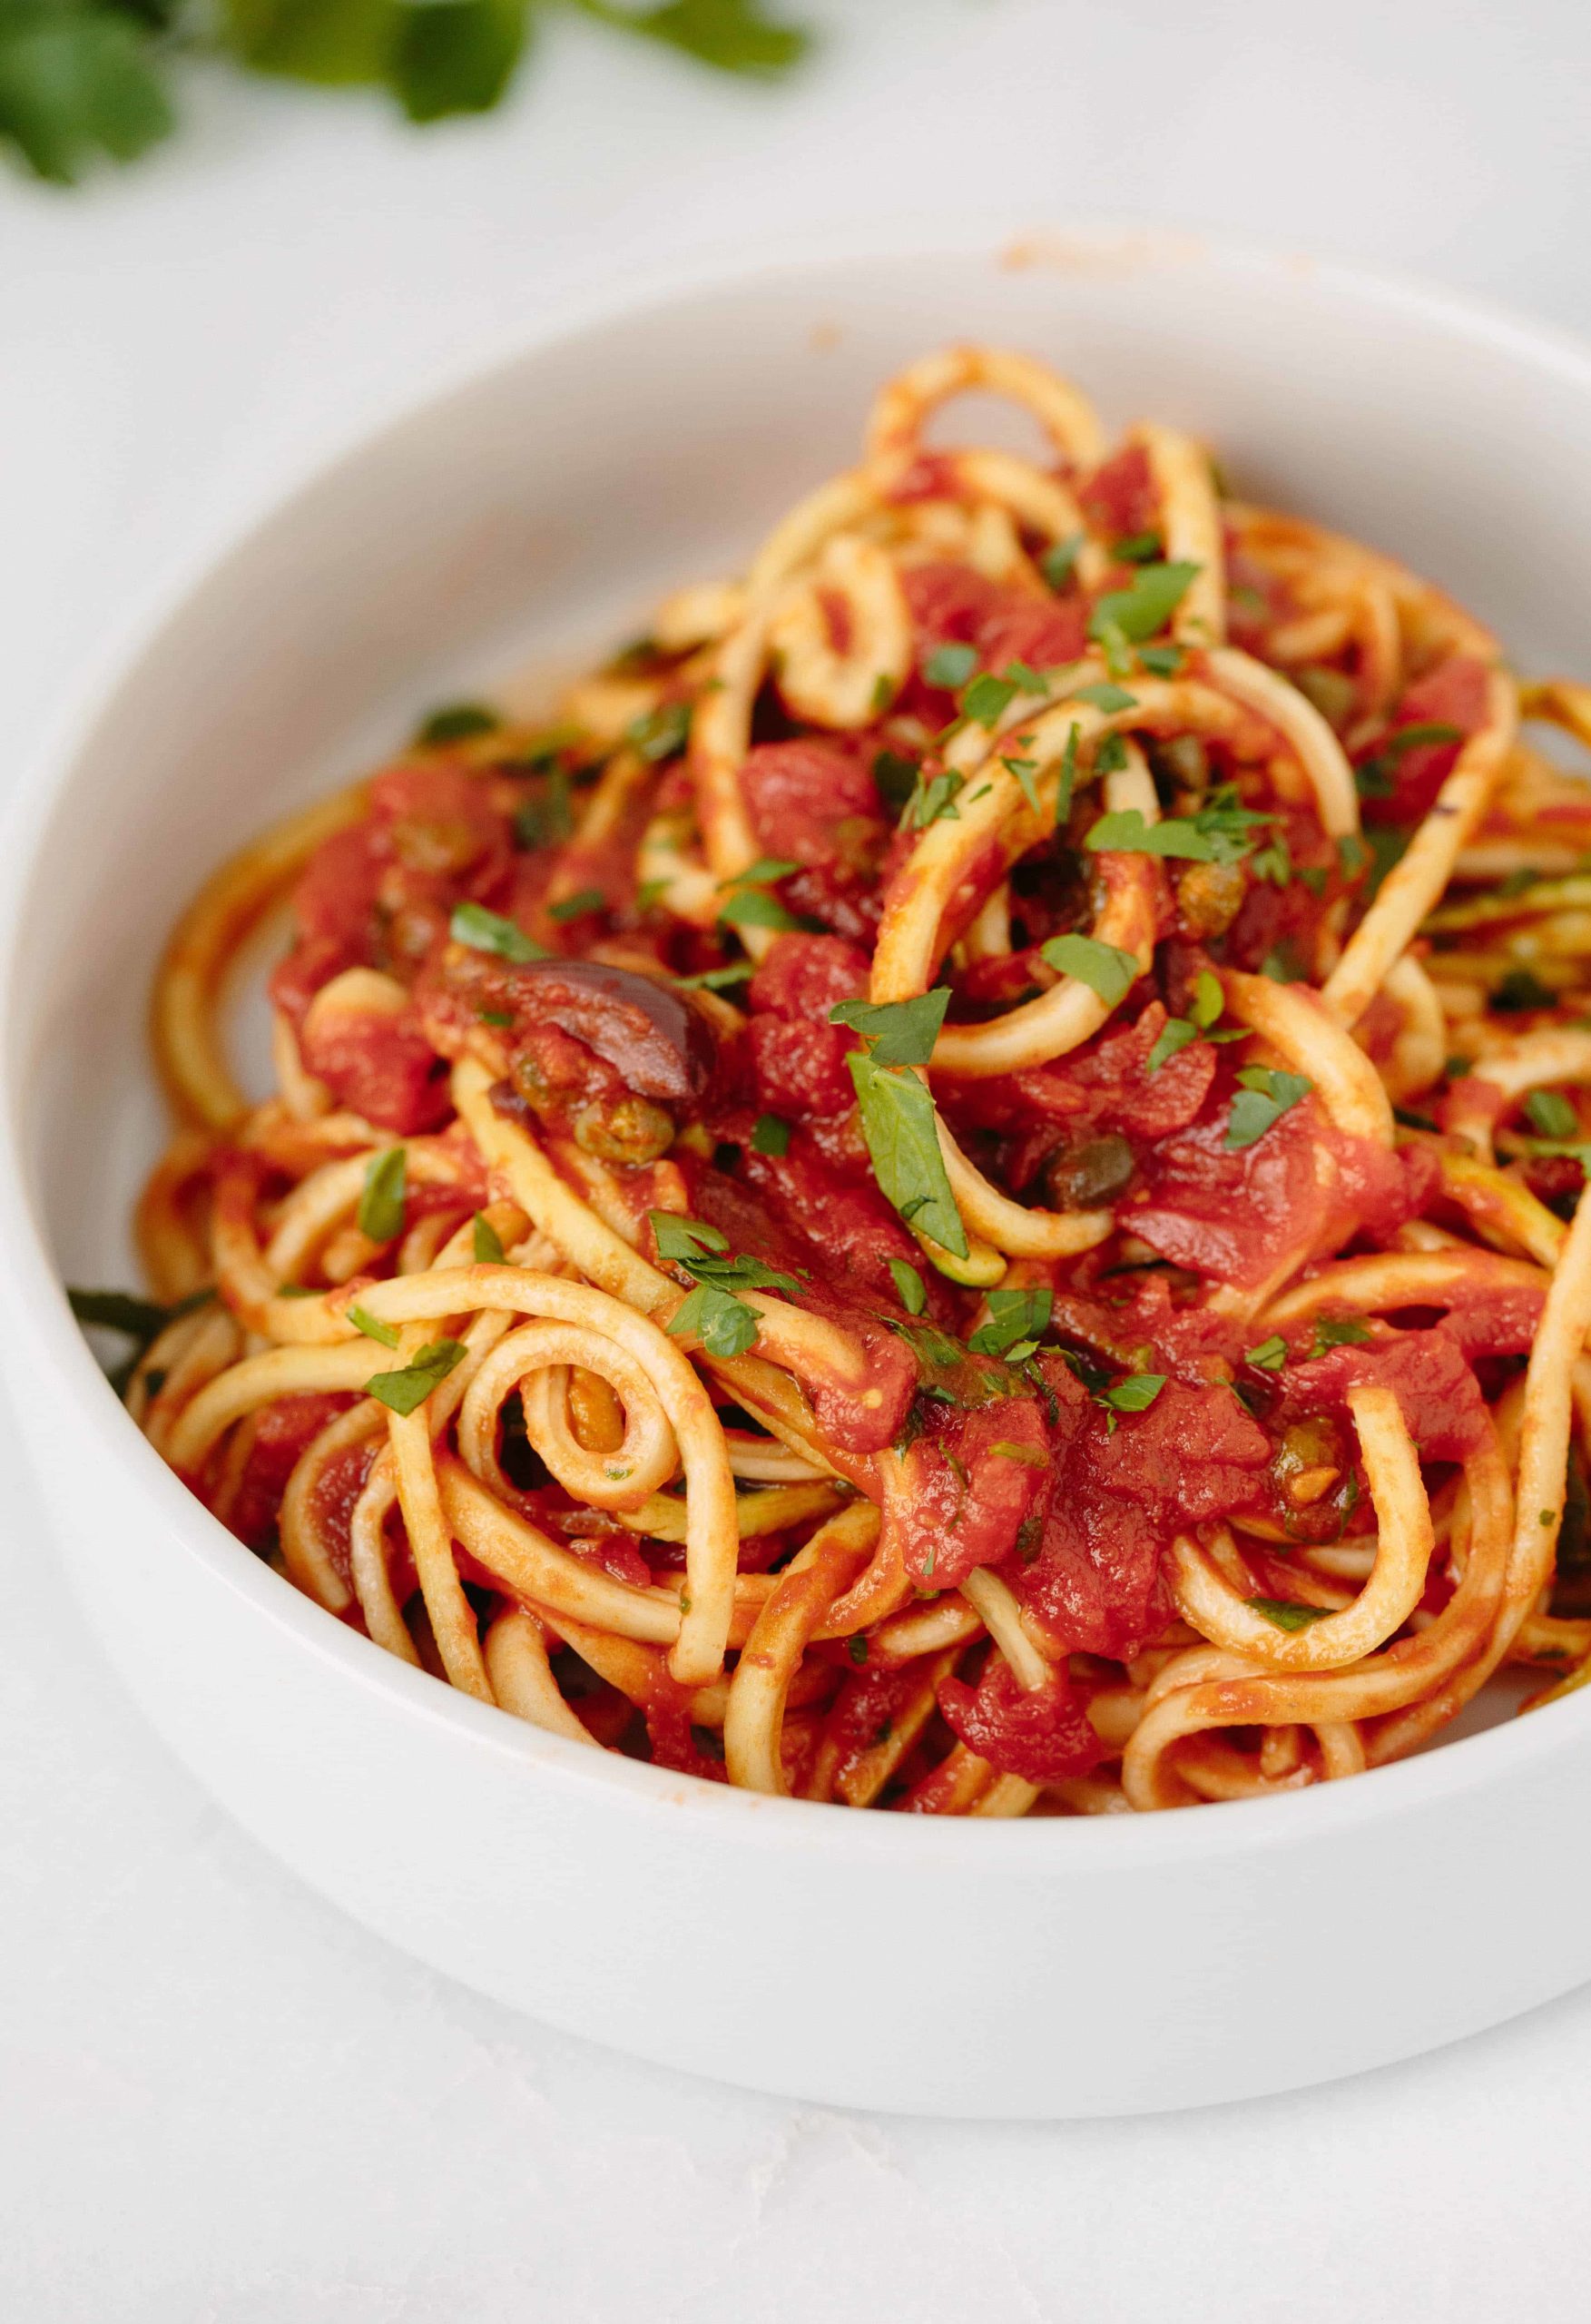 Inspiralized: Vegan Zucchini Spaghetti Puttanesca